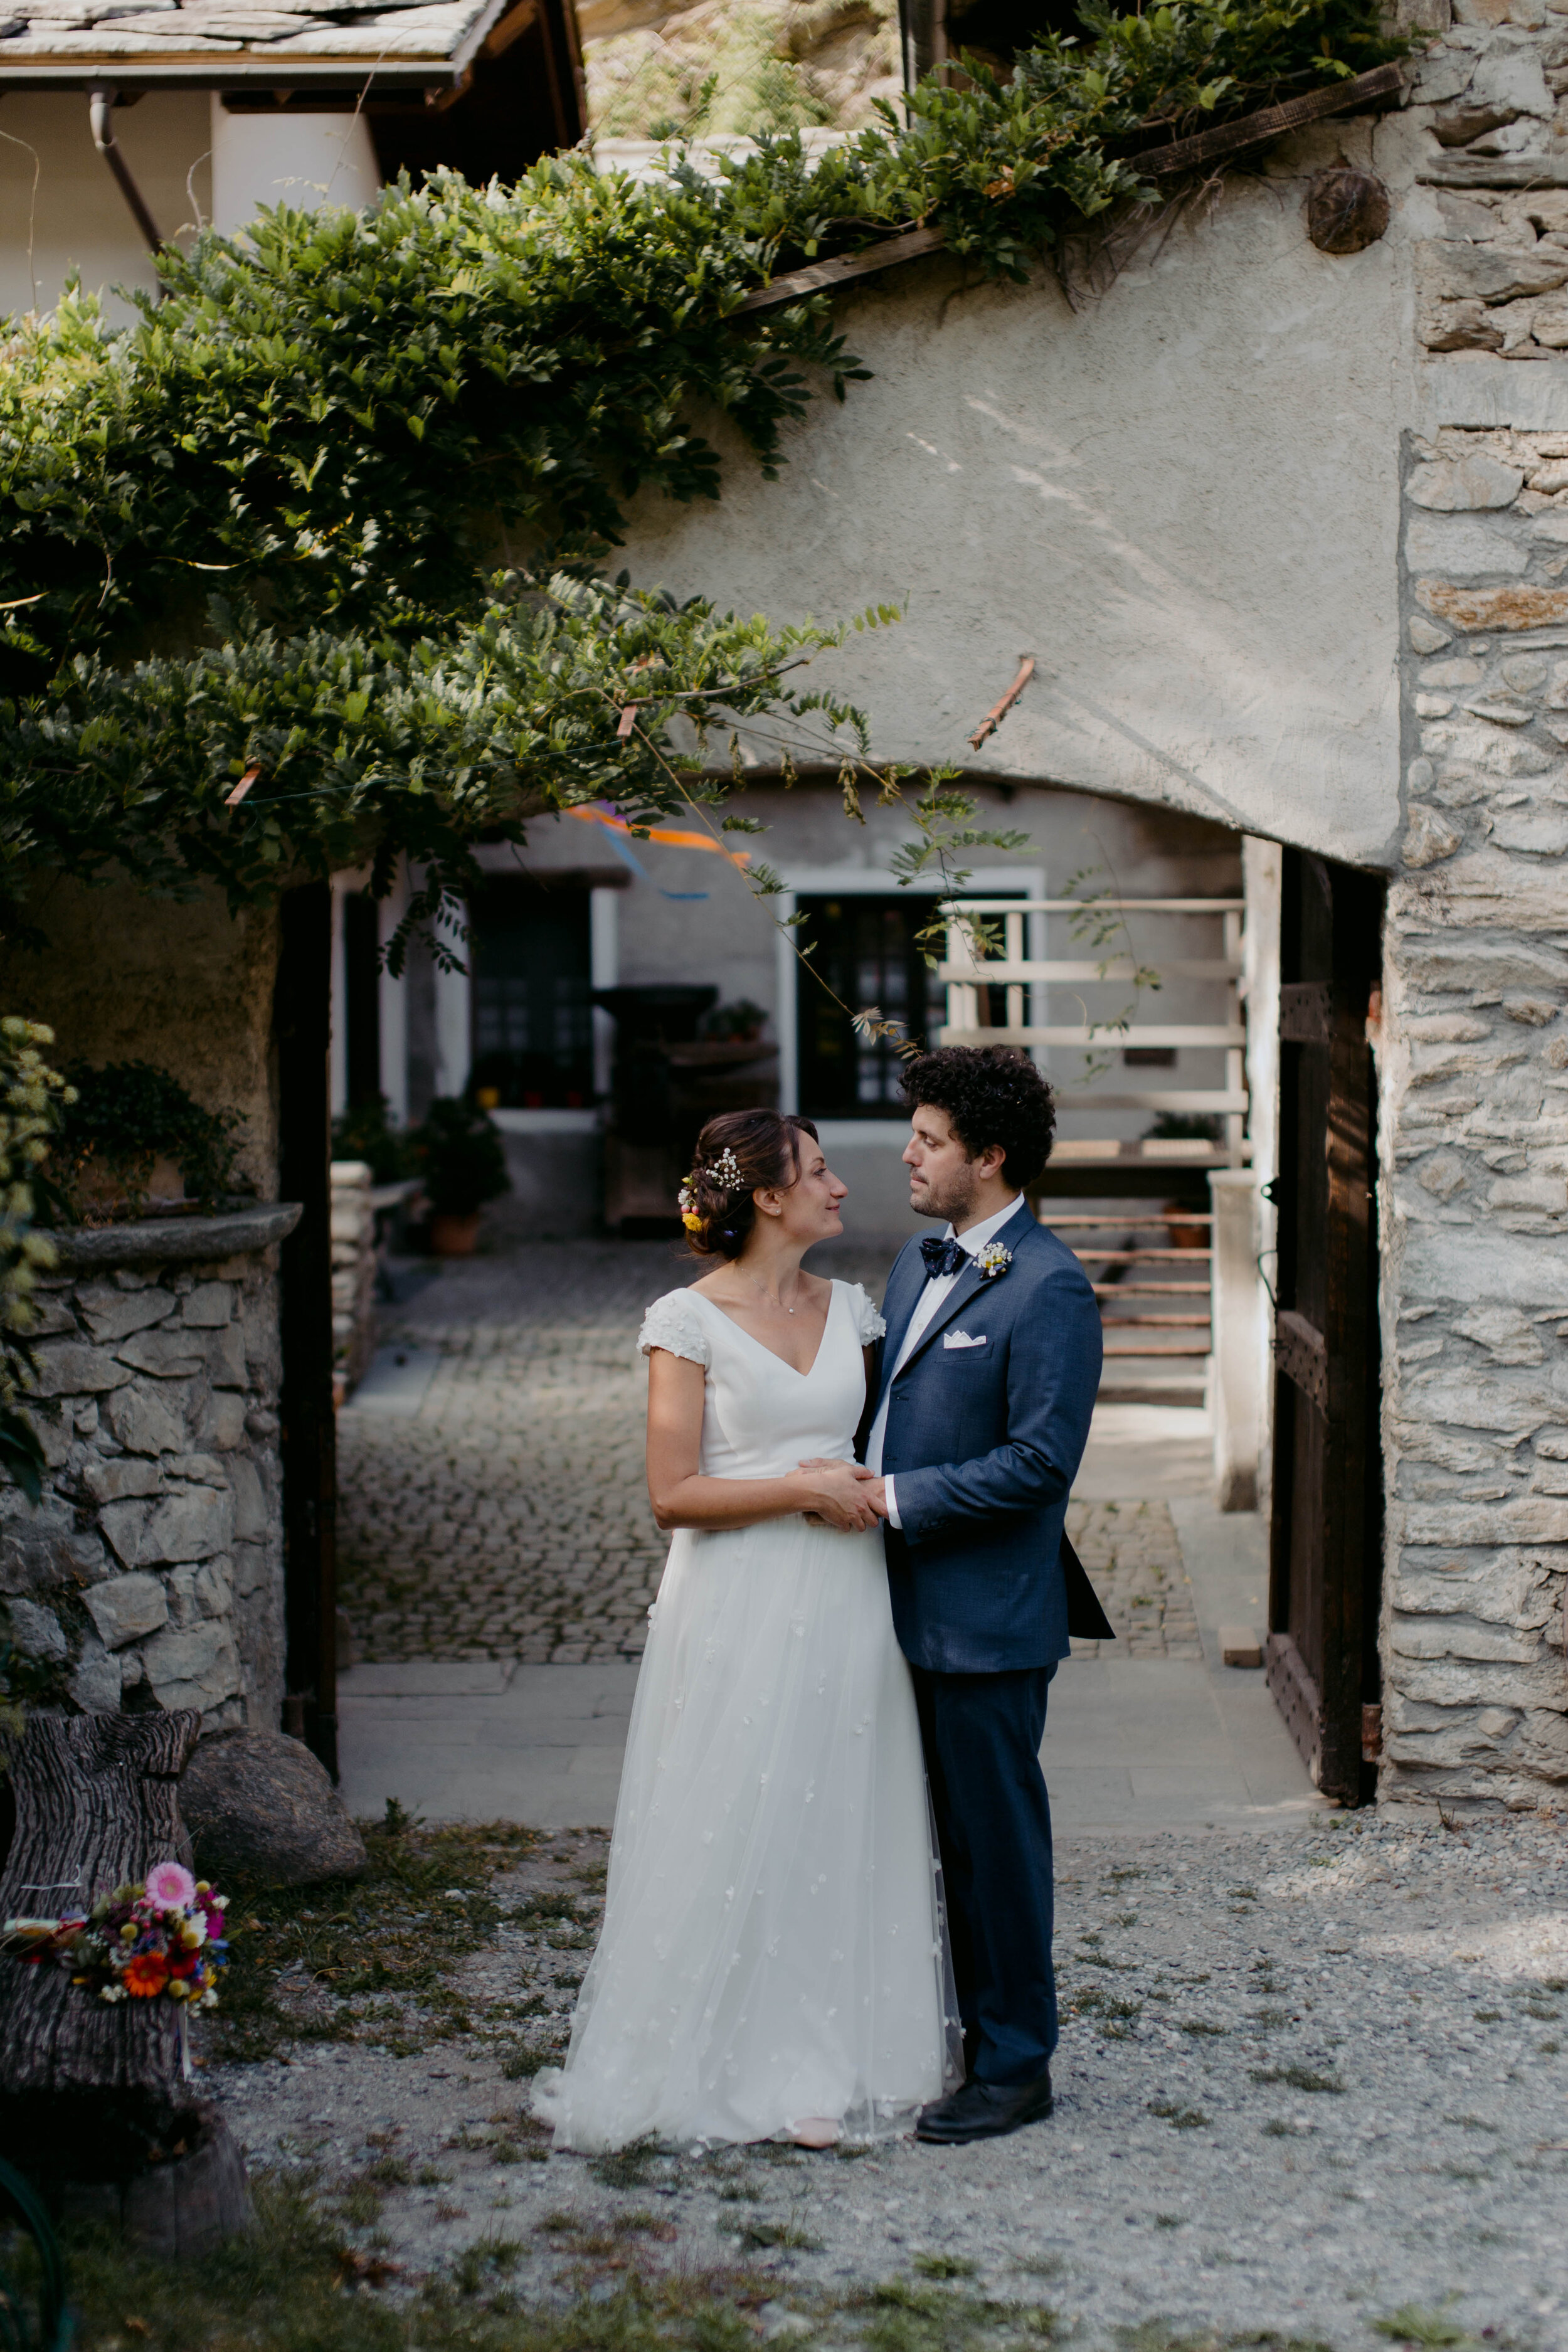 053 - Matrimonio in Val di Susa - Miriam Callegari Fotografa.JPG